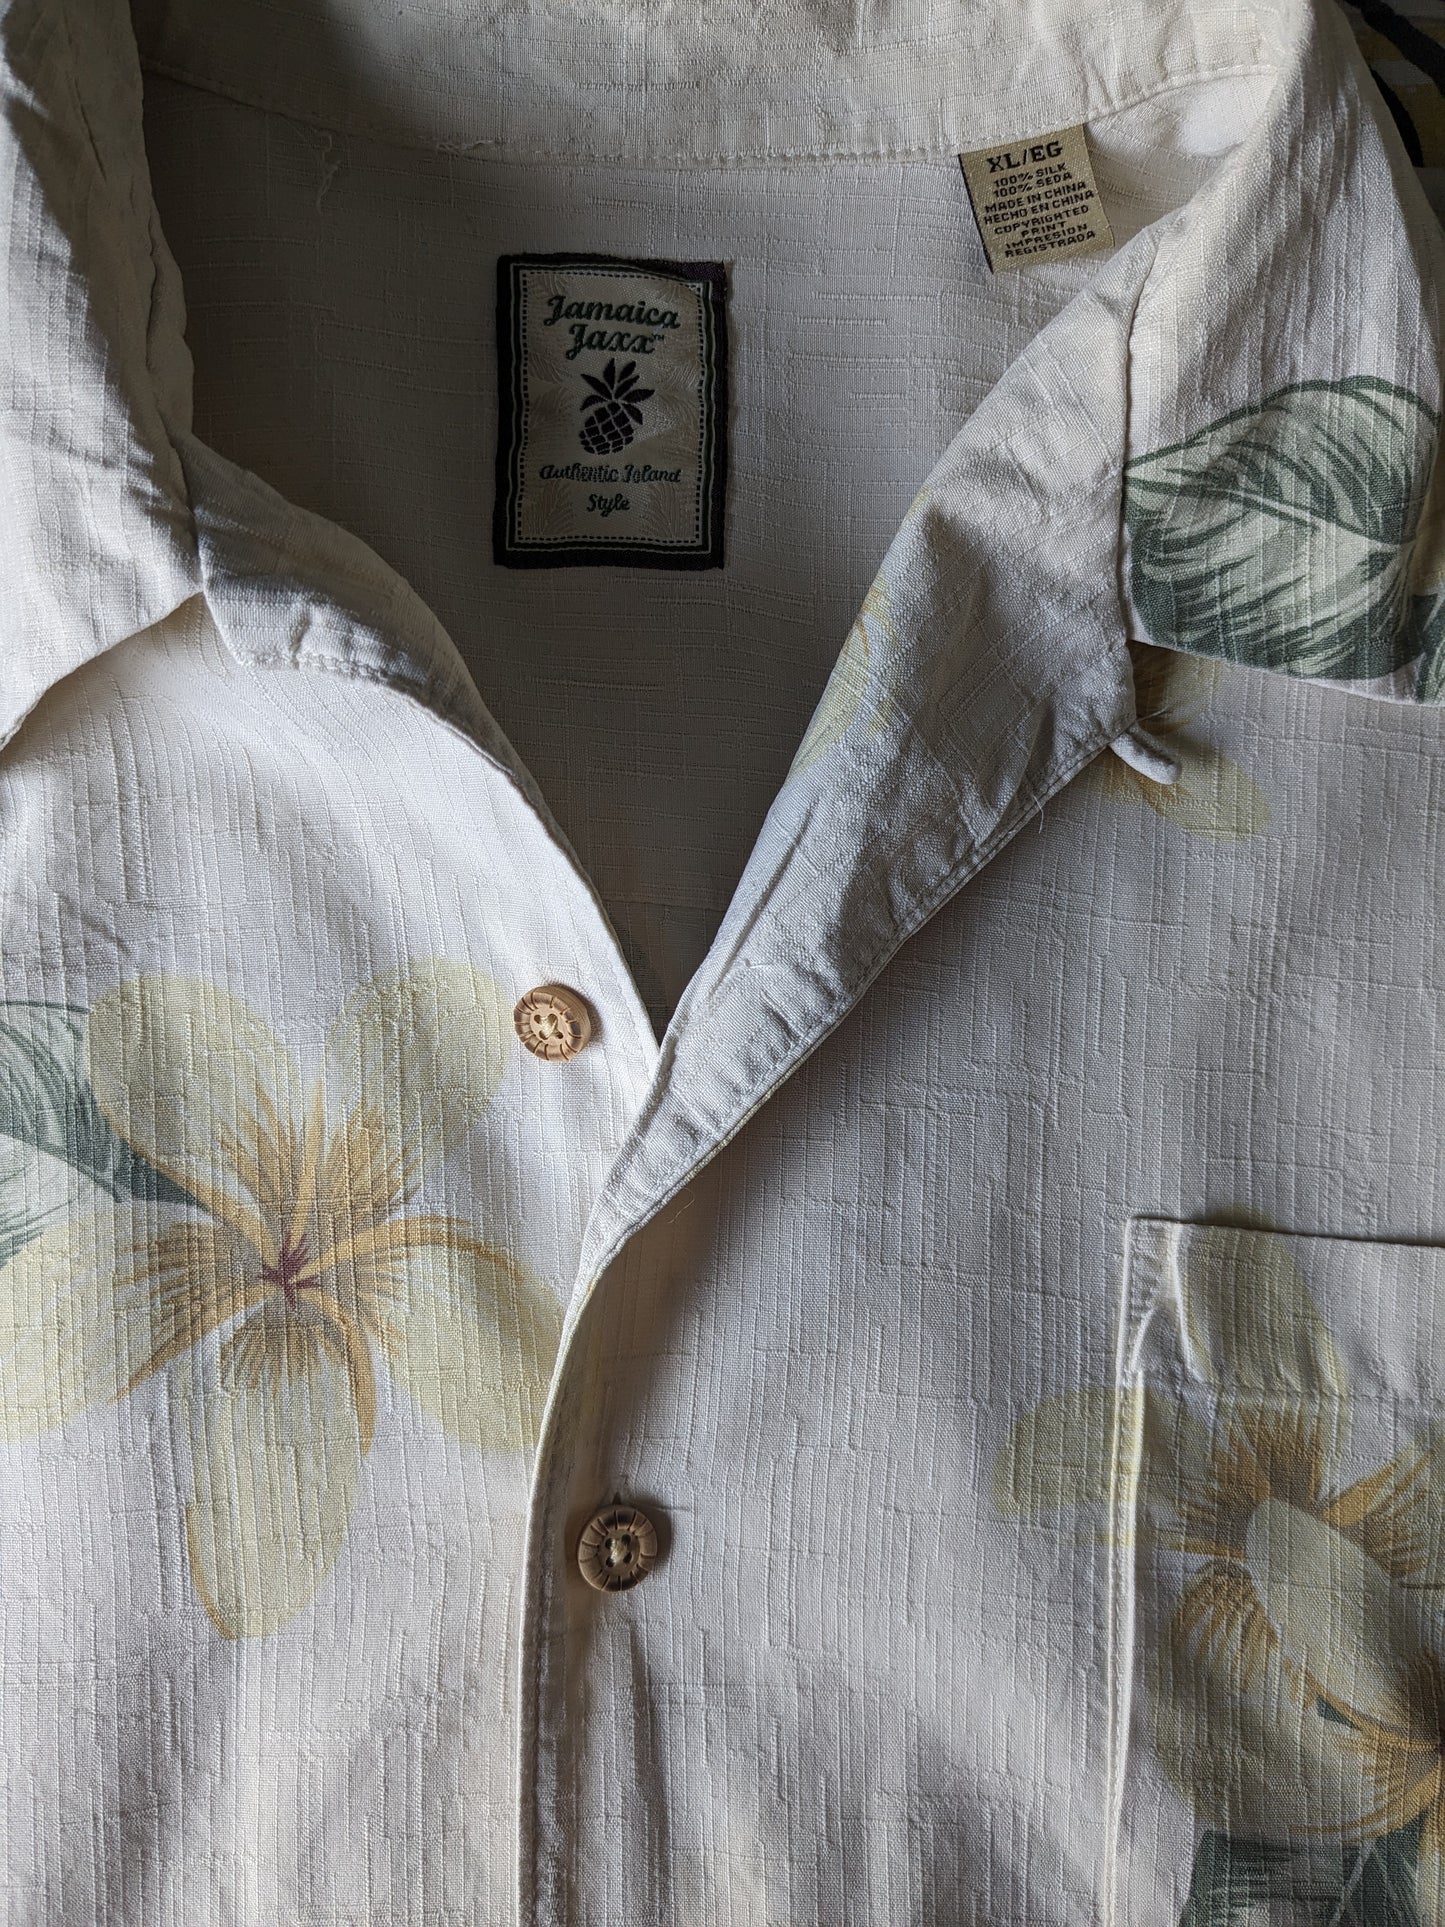 Jamaica Jaxx origineel Hawaii overhemd korte mouw. Zijde met beige geel groene bloemen print. Maat XL.